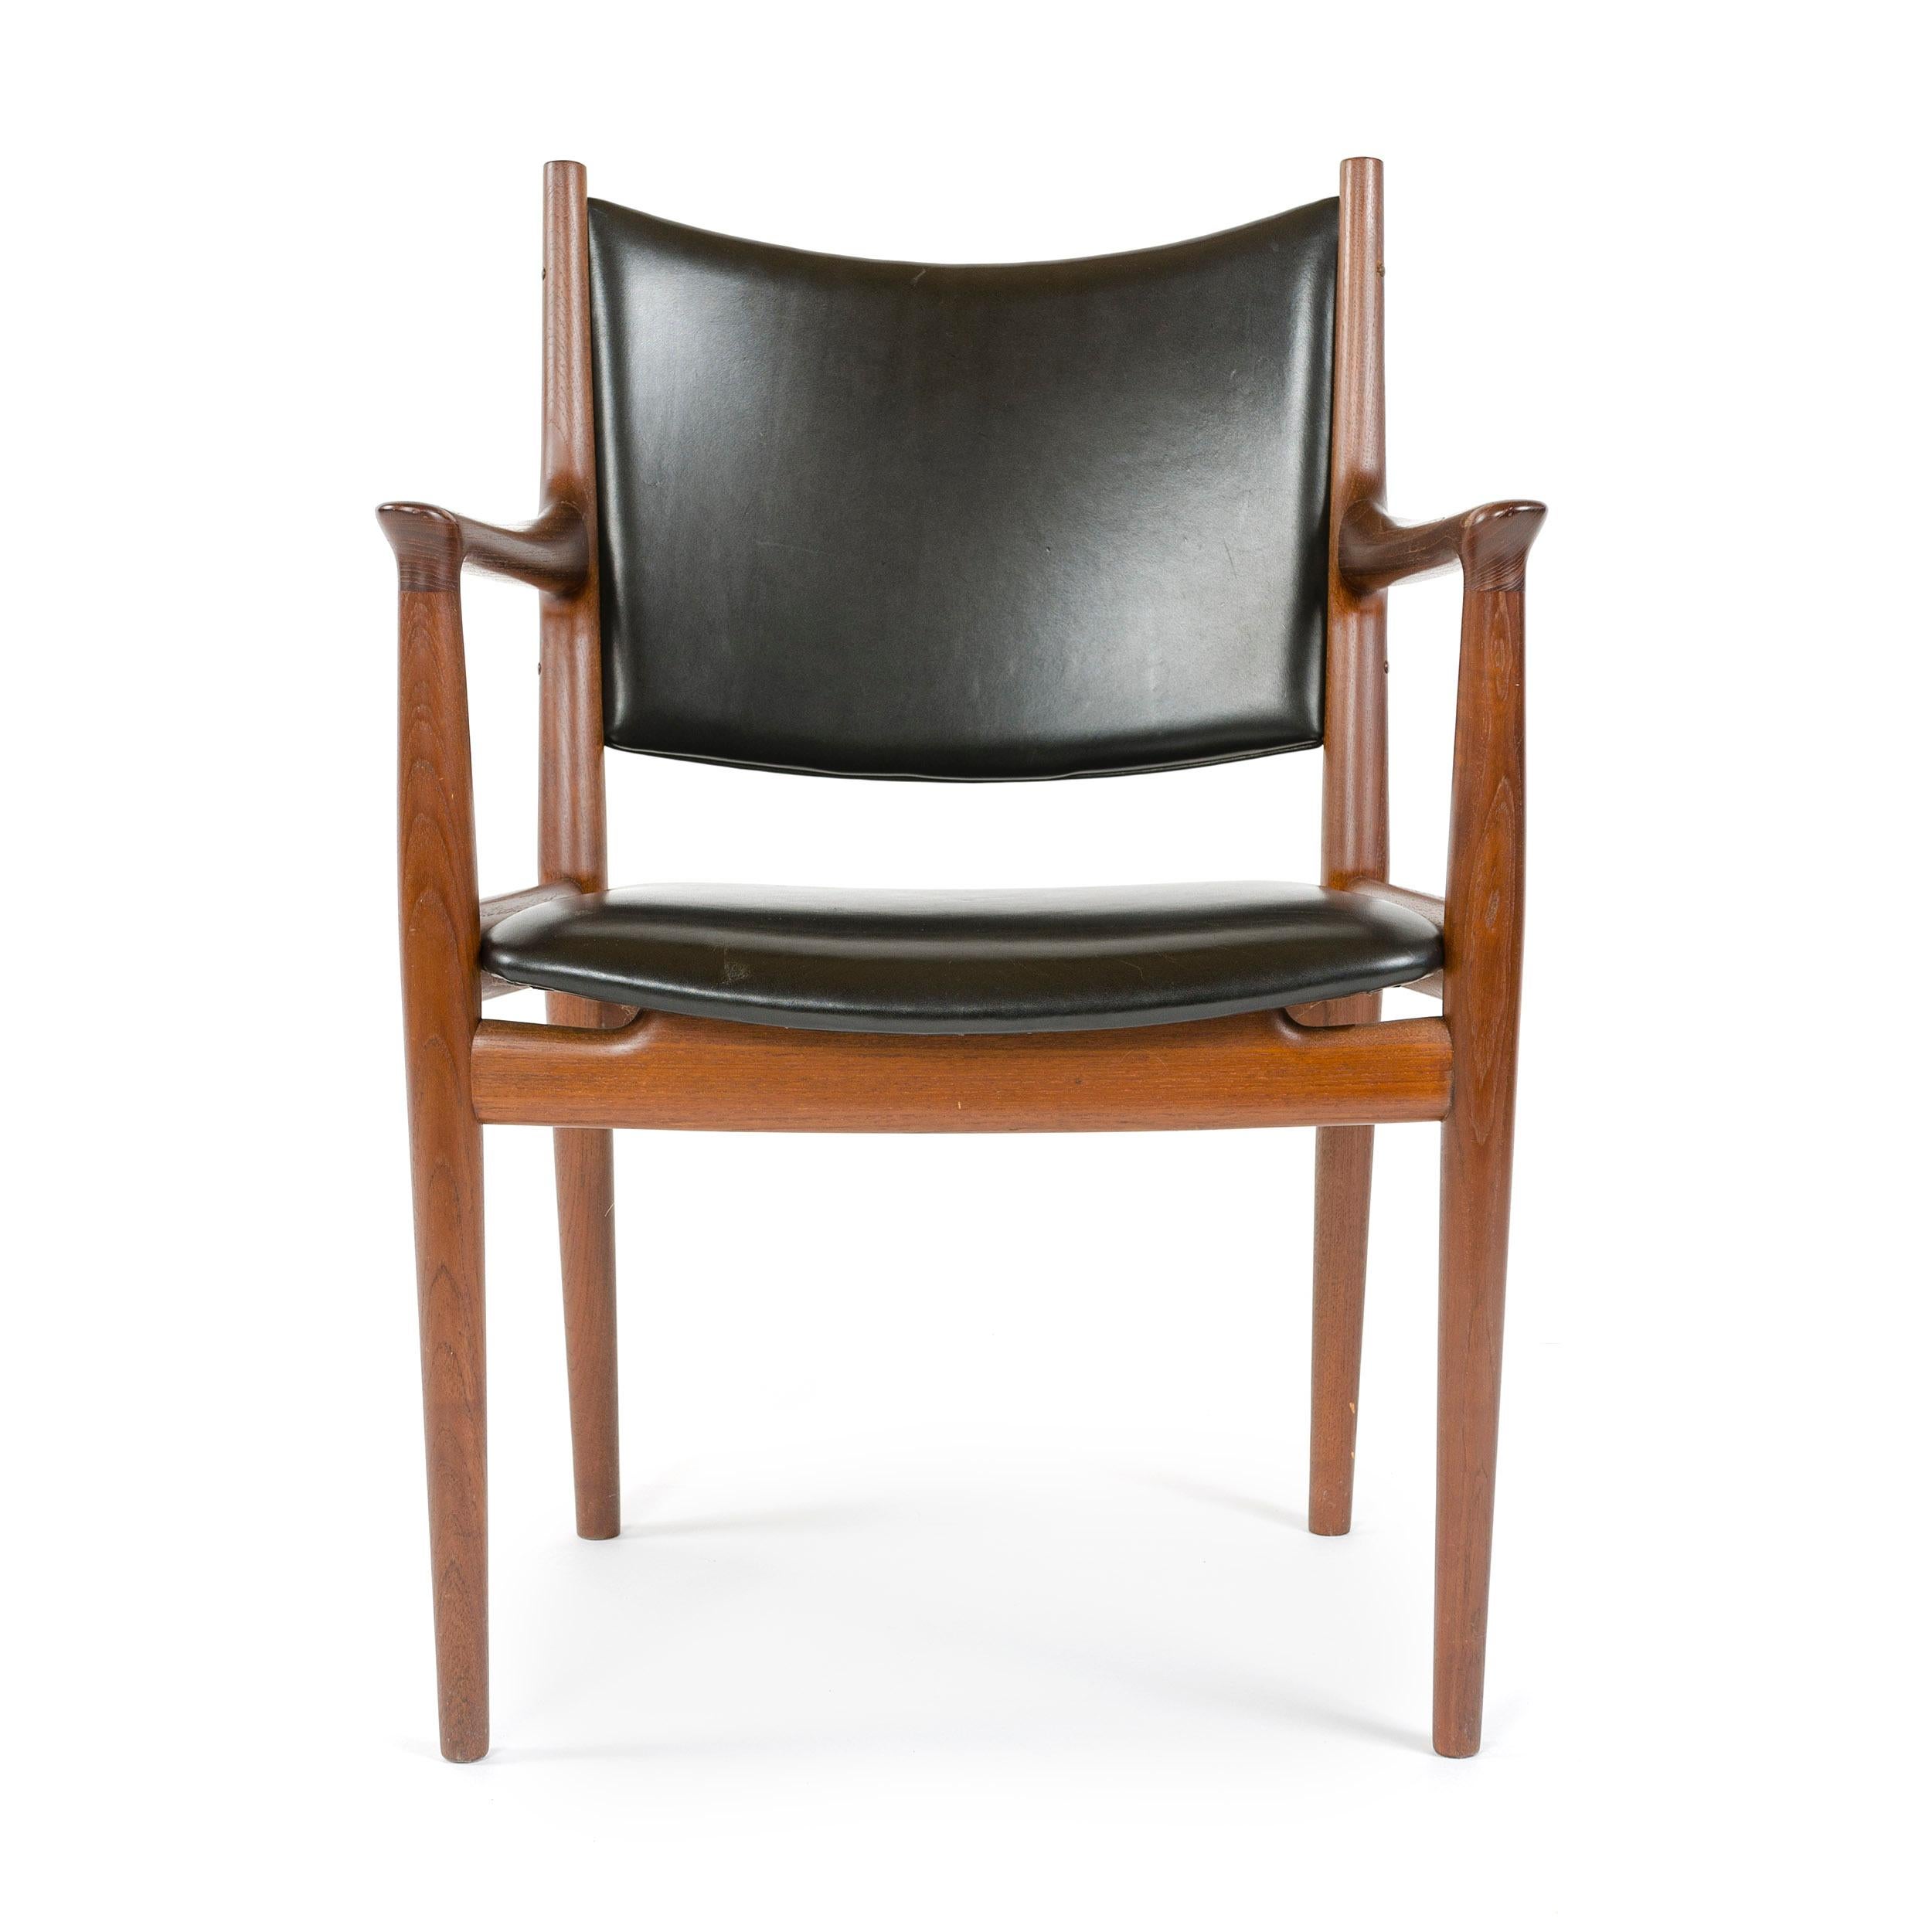 Une élégante chaise de salle à manger fabriquée à la main, avec un cadre en teck apparent et un revêtement en cuir.